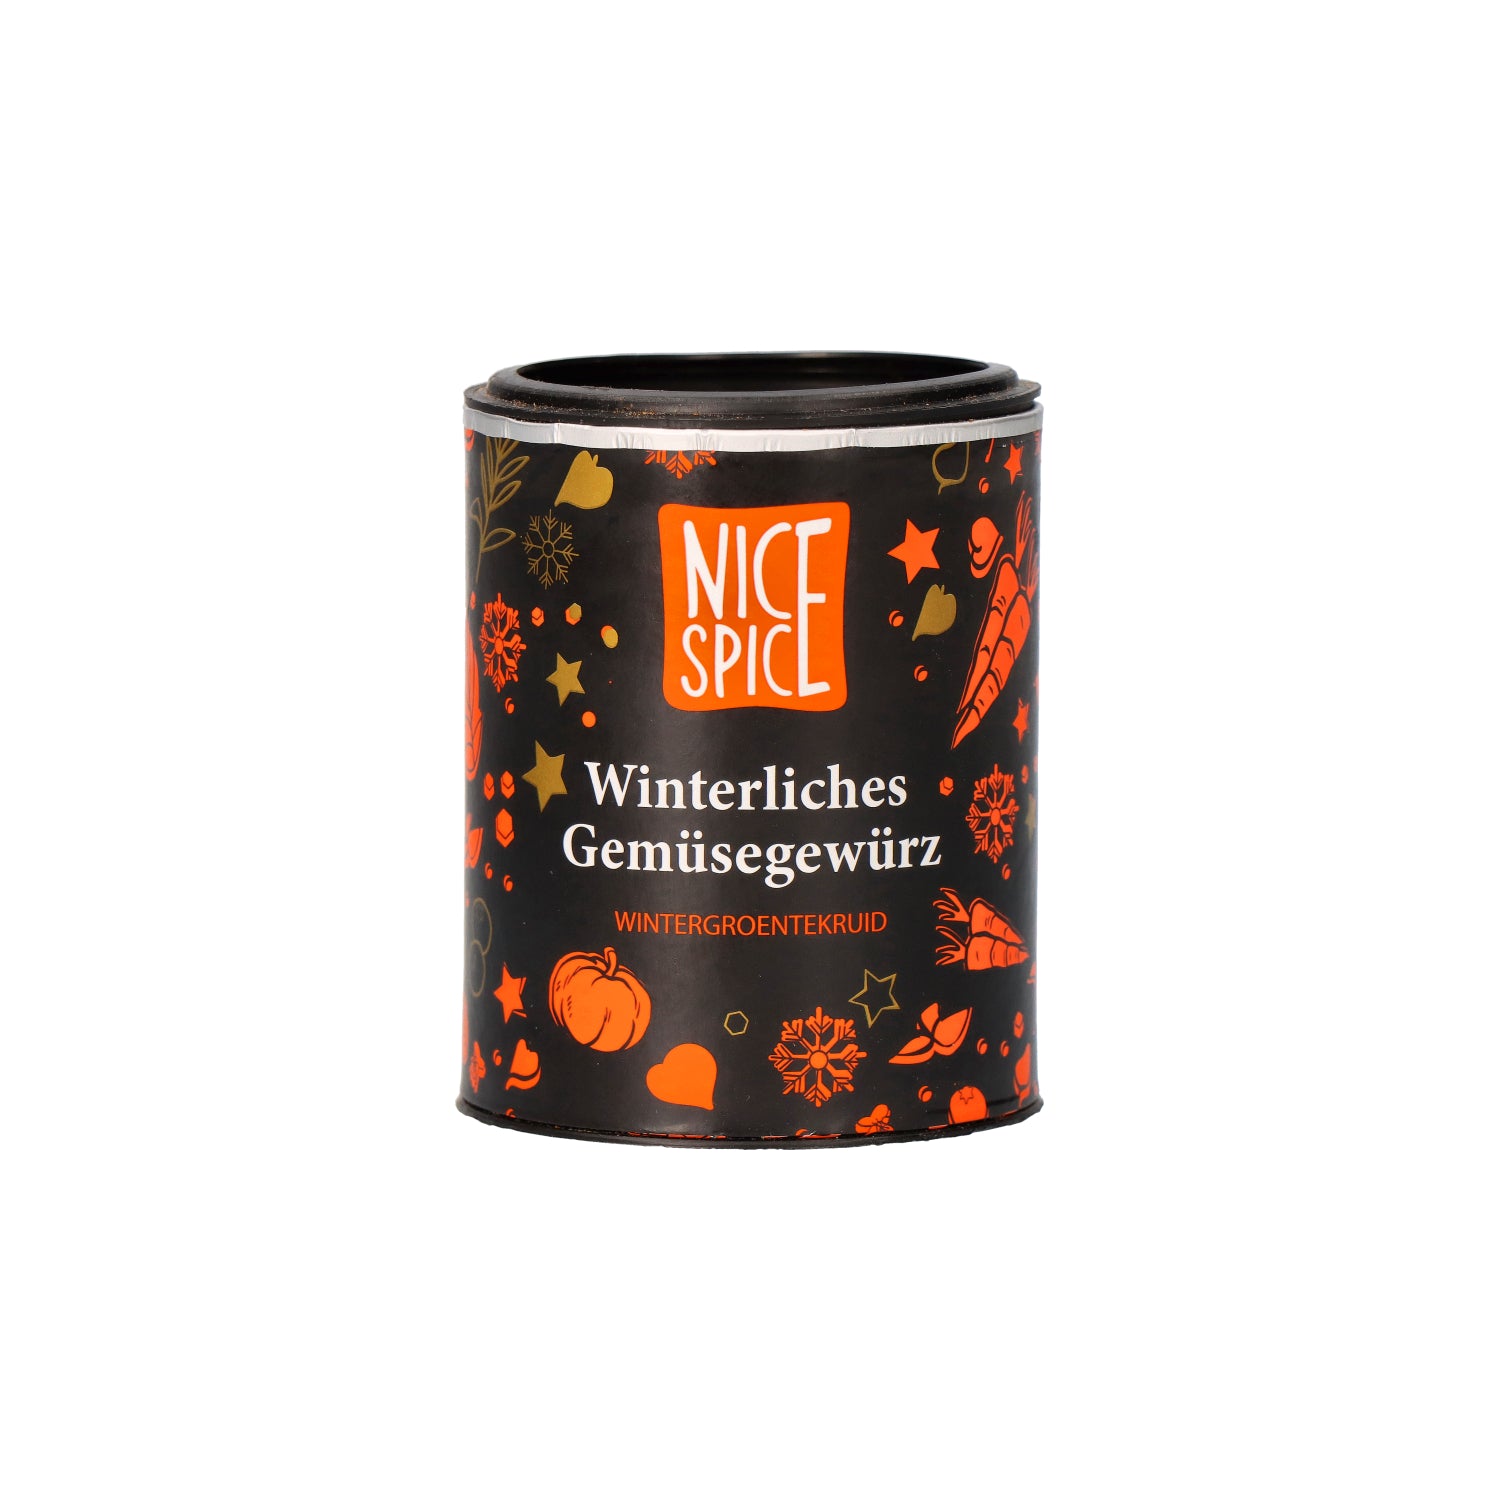 NICE SPICE Winterliches Gemüsegewürz in schwarz oranger Dose mit verspieltem Winterdesign vor weißem Hintergrund